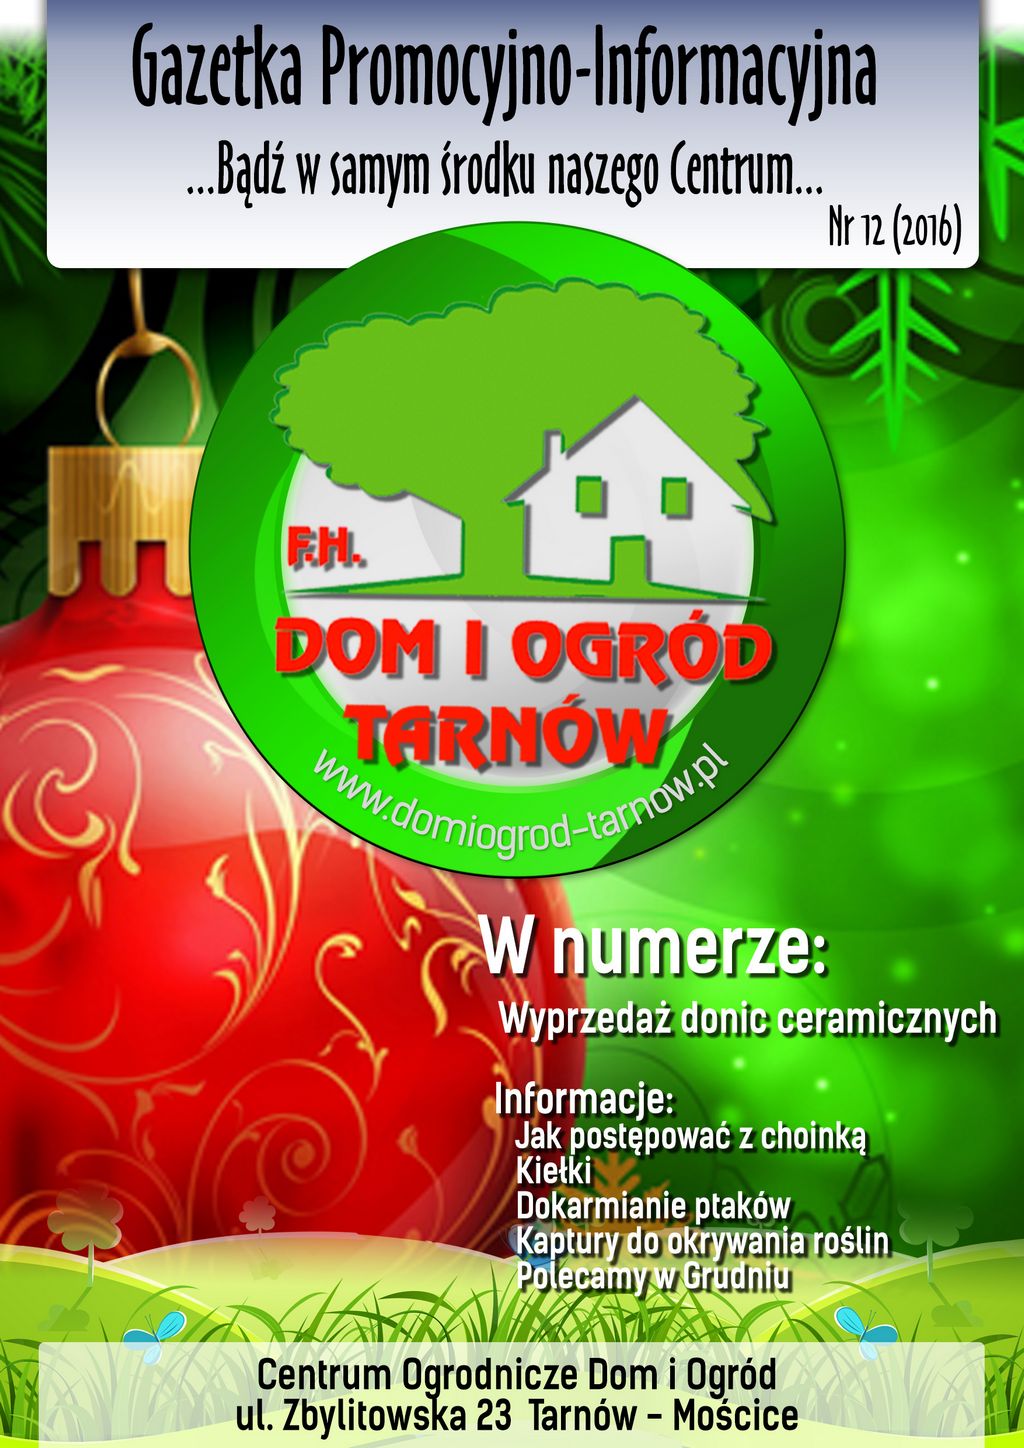 Gazetka Promocyjno-Informacyjna - 12/2016